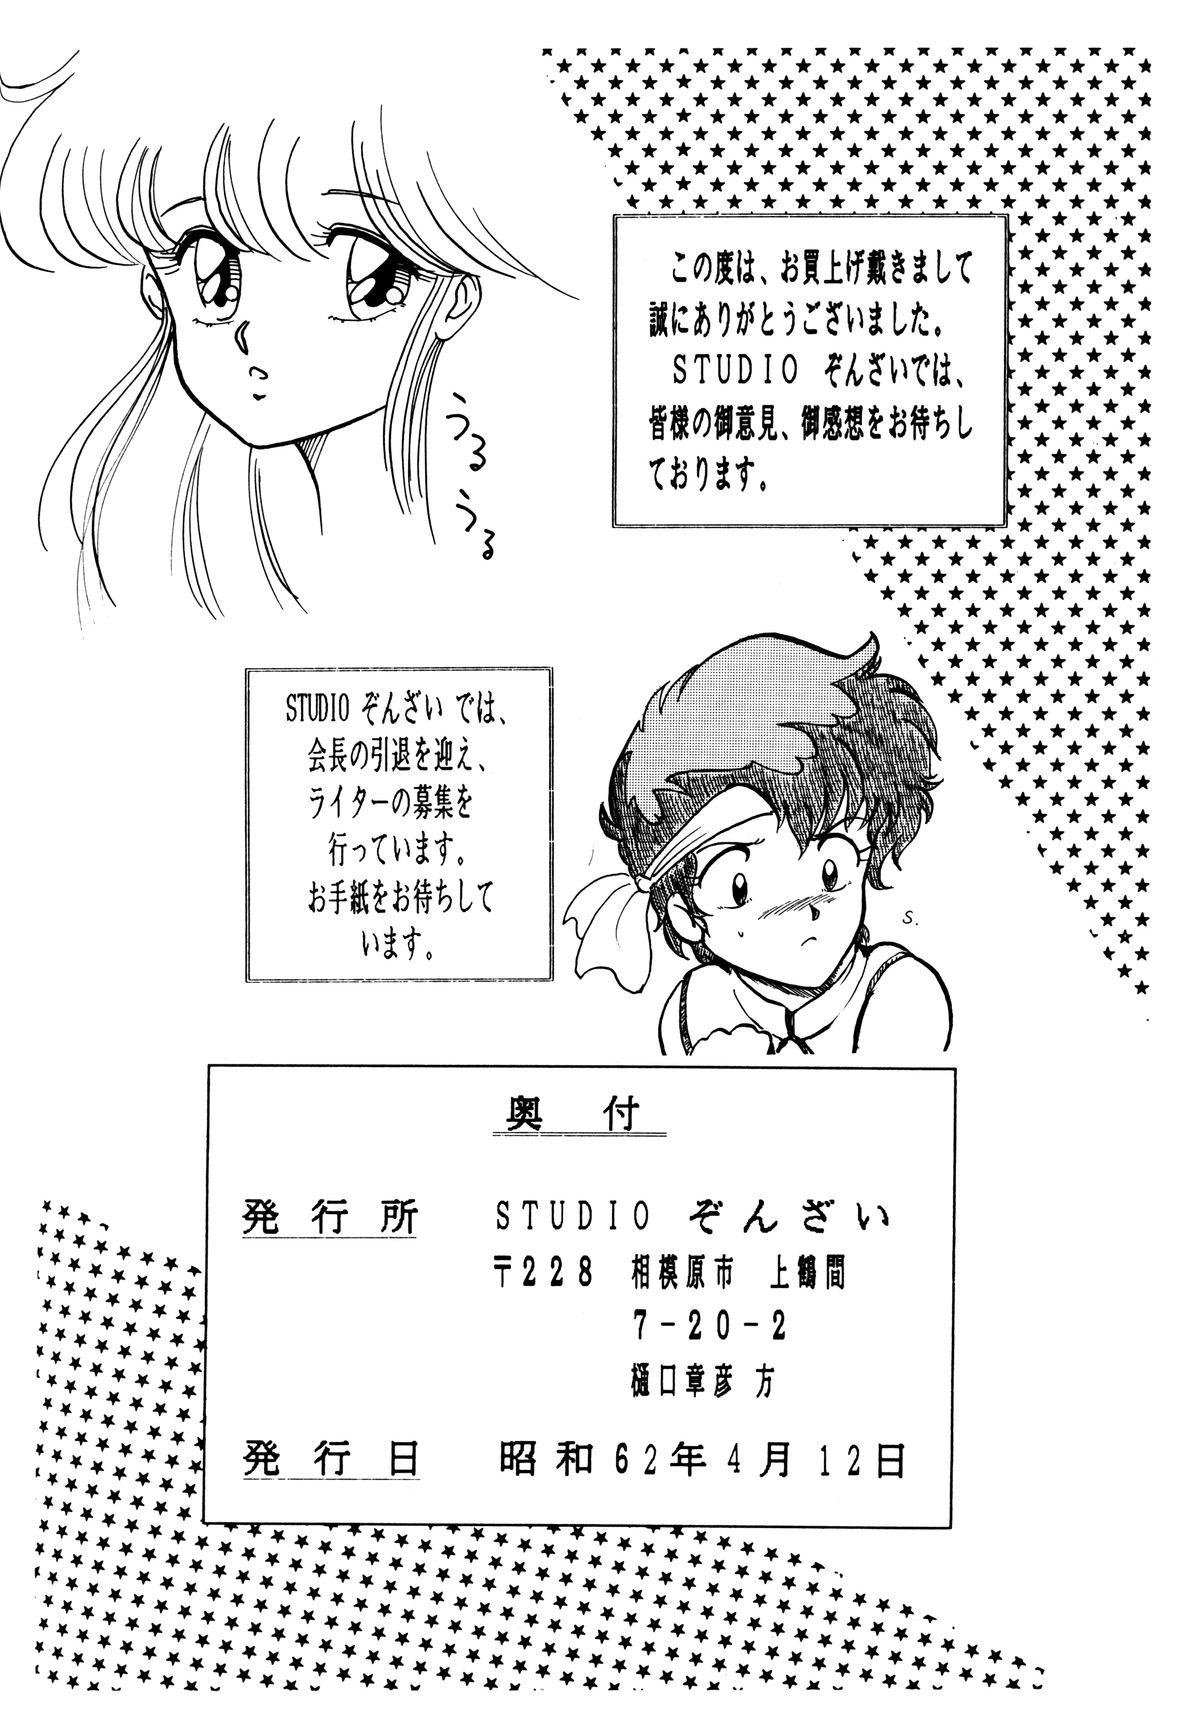 Perfect Pussy Opepepe 6 - Urusei yatsura Dirty pair Maison ikkoku Gundam zz Project a-ko Machine robo Kyuukyoku choujin r Glamcore - Page 77